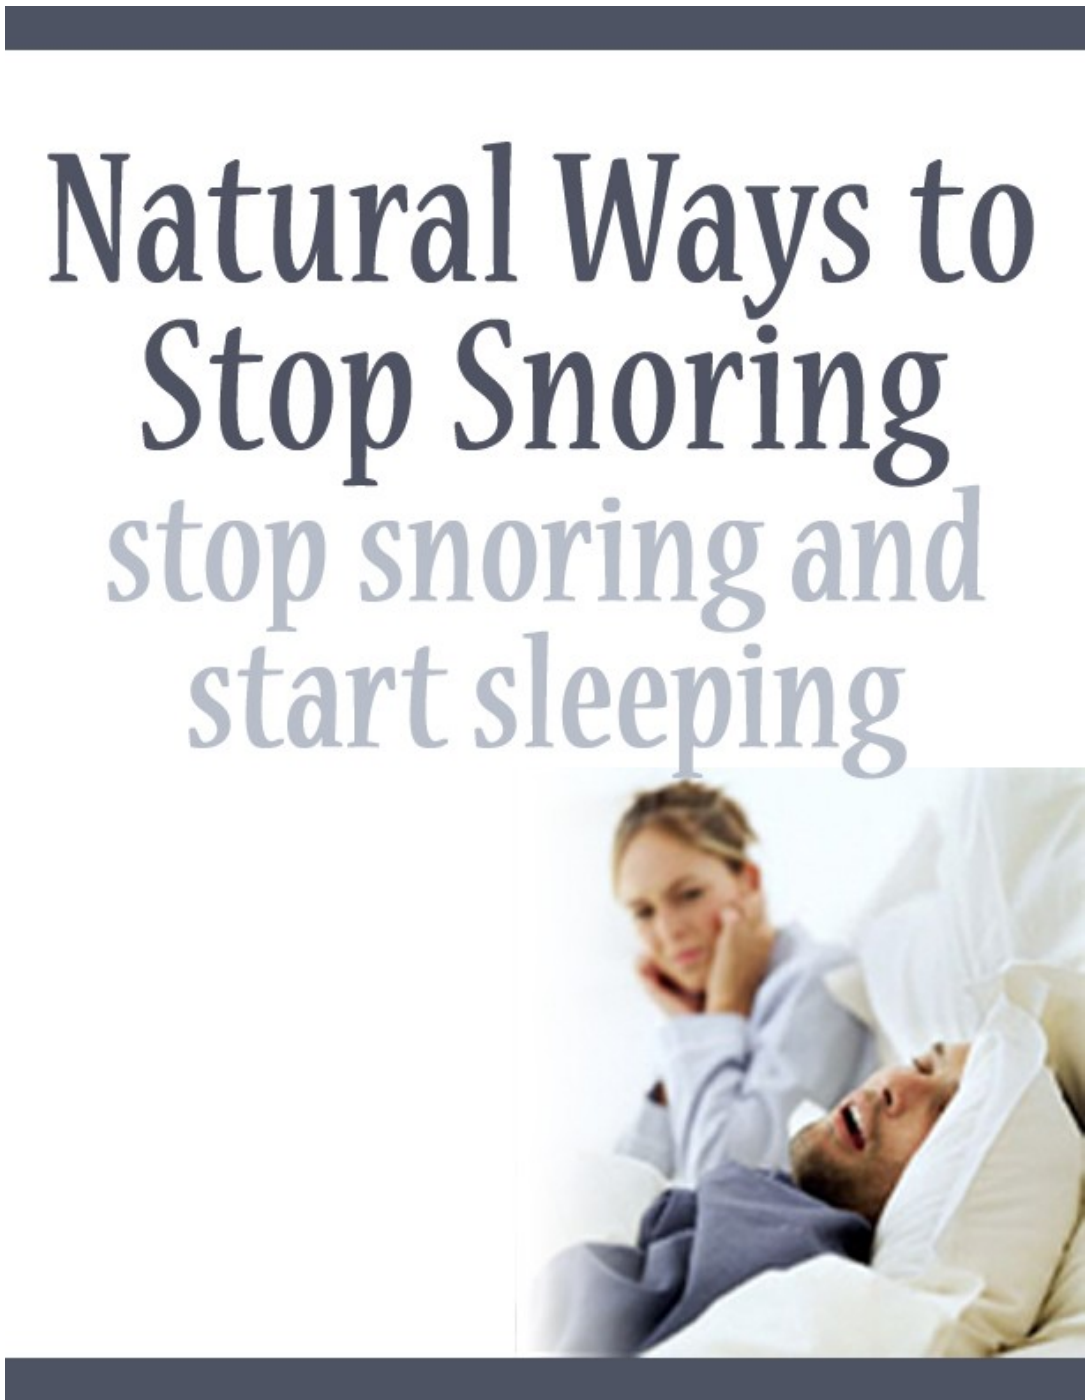 Naturing Ways to Stop Snoring Stop Snoring and Start Sleeping